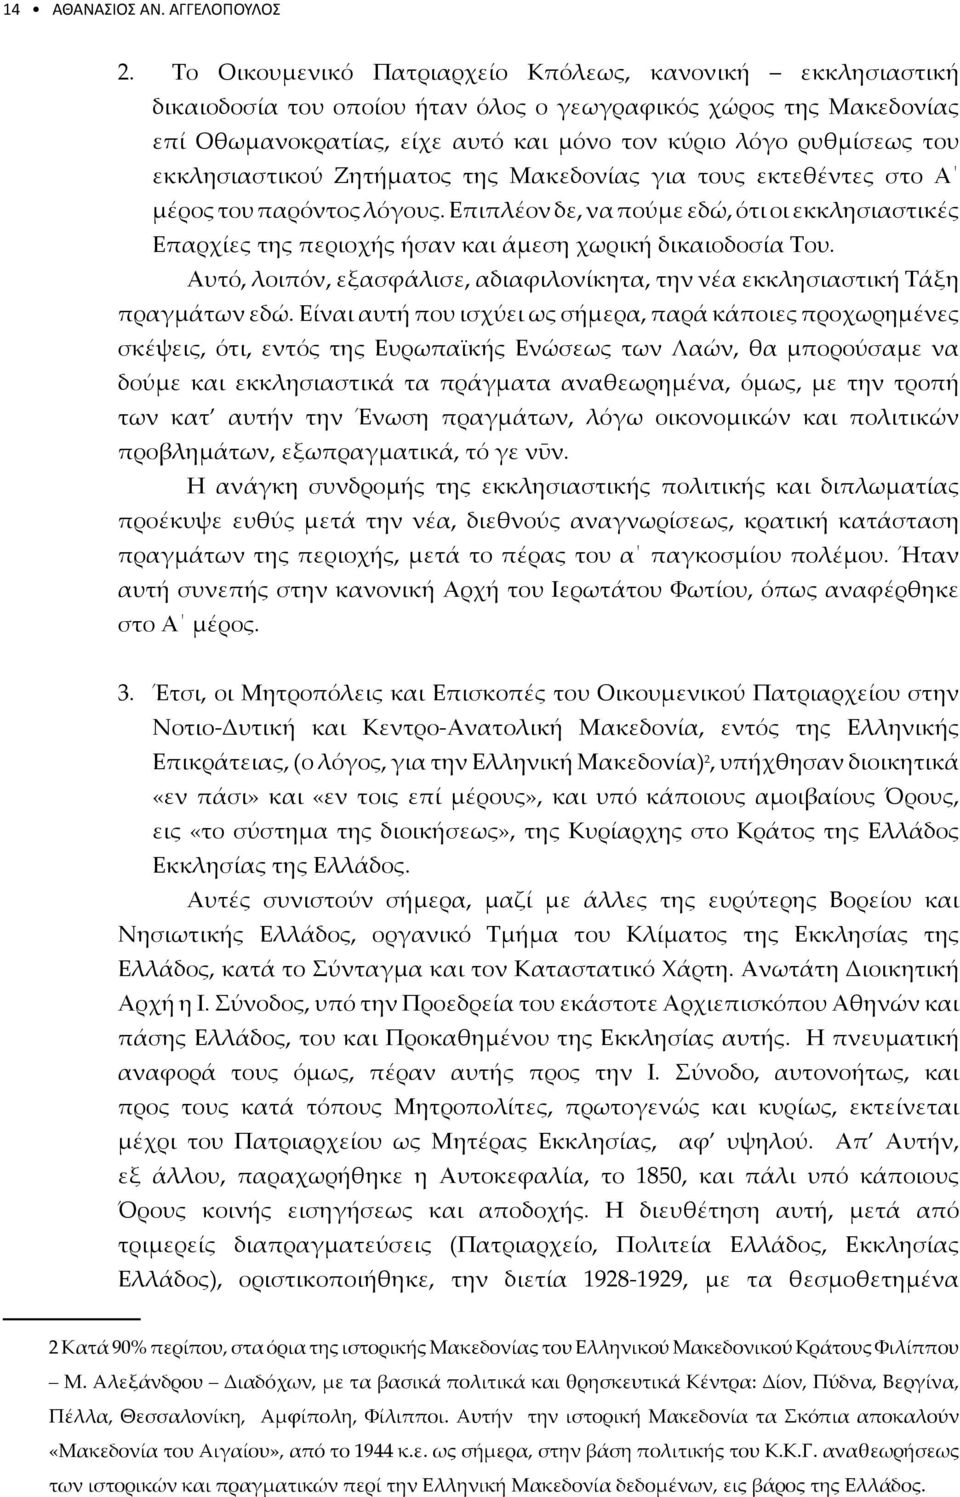 εκκλησιαστικού Ζητήματος της Μακεδονίας για τους εκτεθέντες στο Α μέρος του παρόντος λόγους.